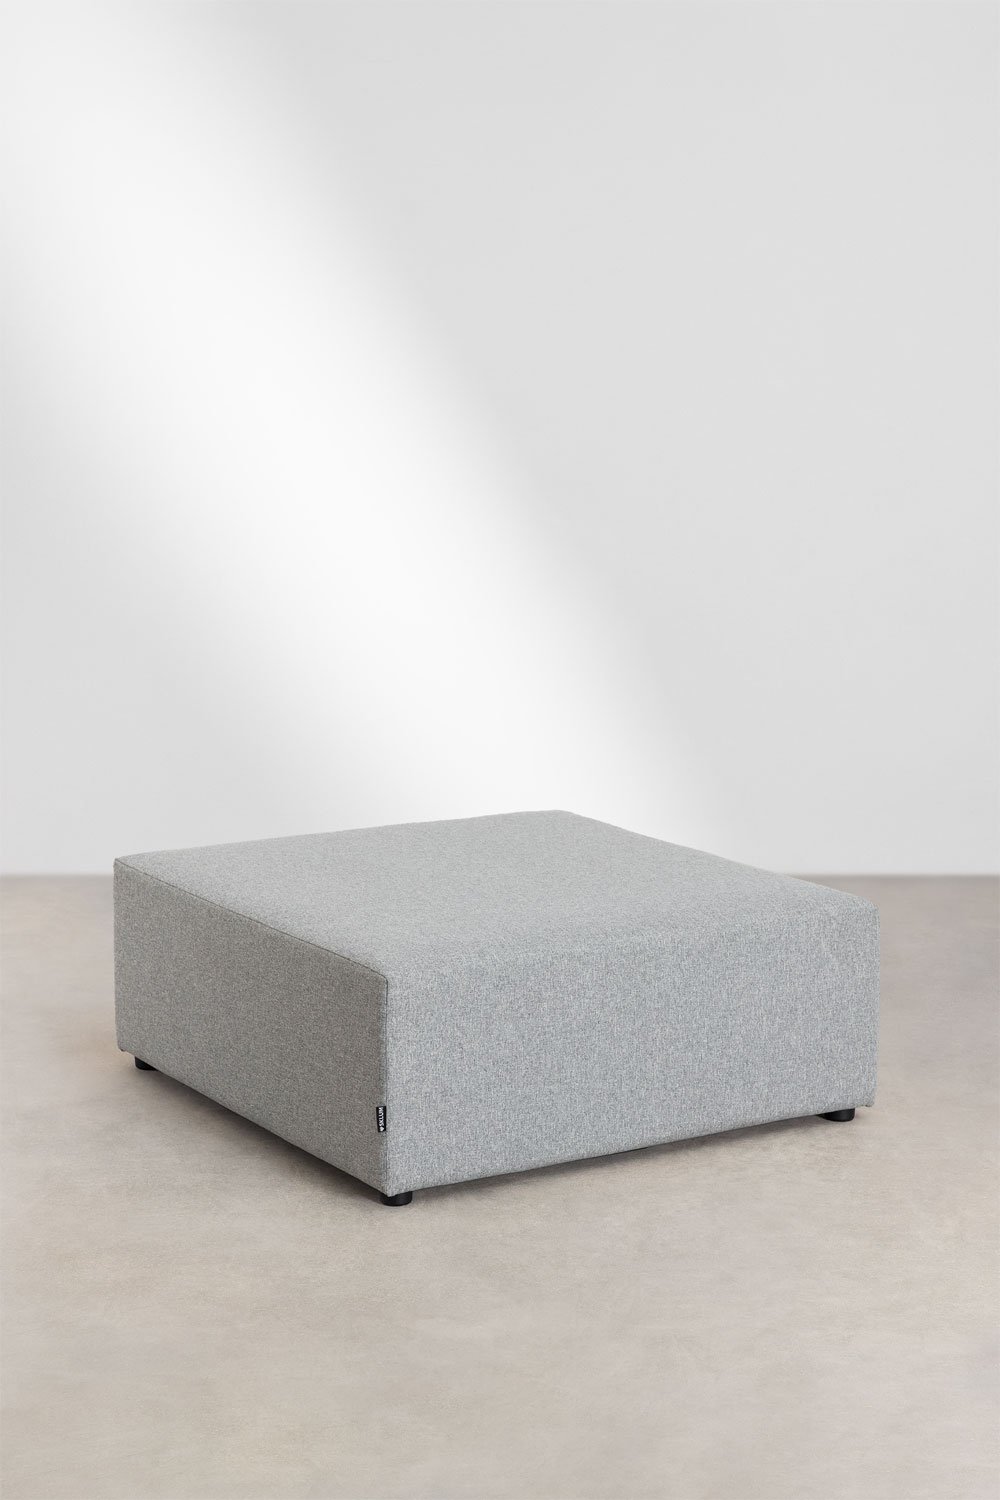 Moduli per divani in tela Kata, immagine della galleria 1